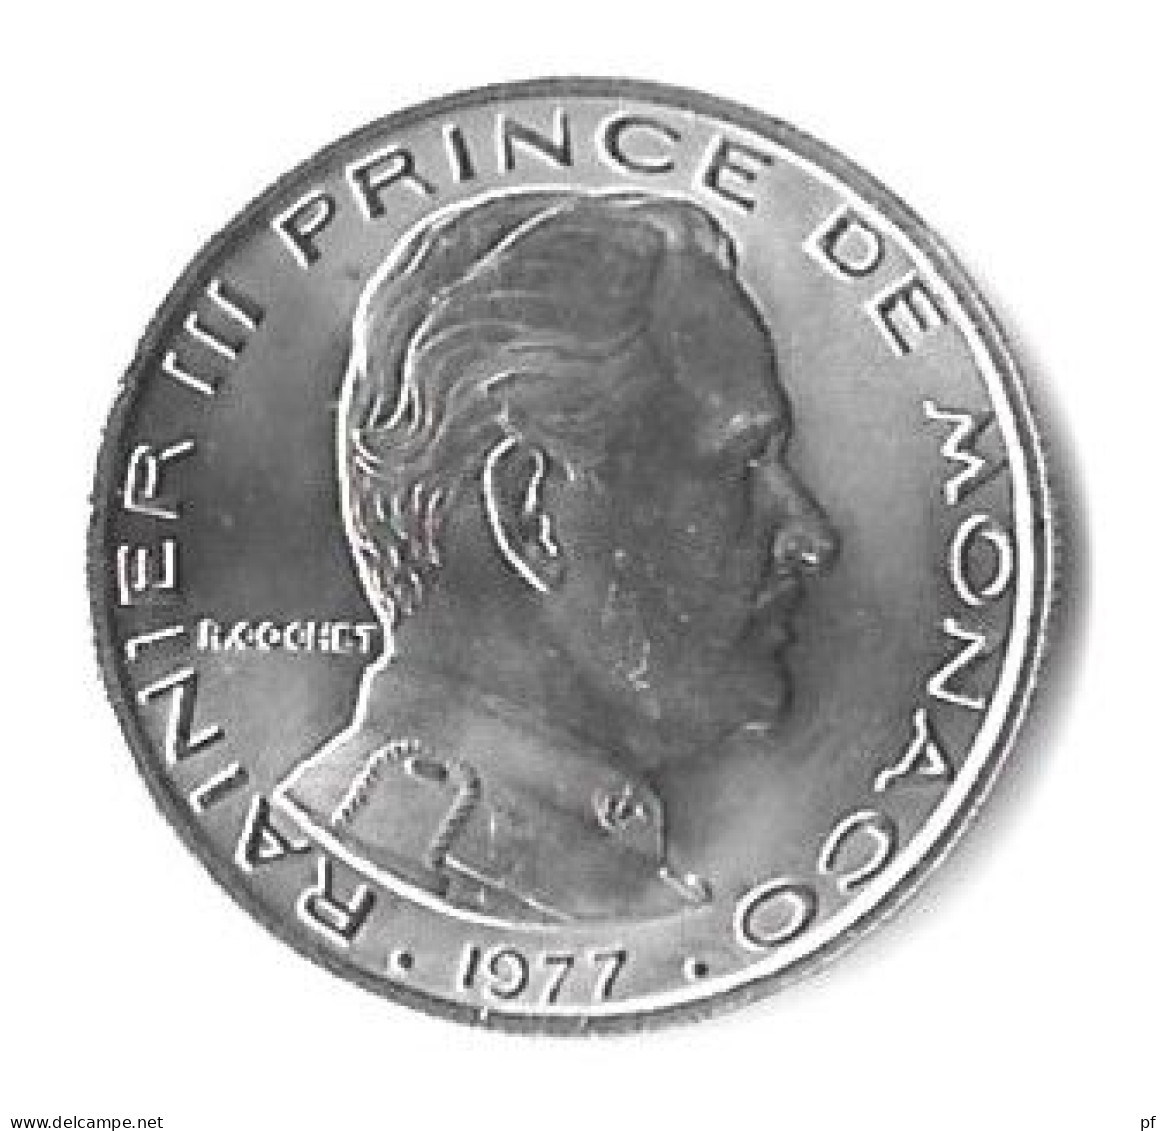 8 pieces de Monaco 1977 :   1 - 5 -10 - 20 centimes + 1/2 - 1 - 5 - 10 francs 1977  UNC/FDC